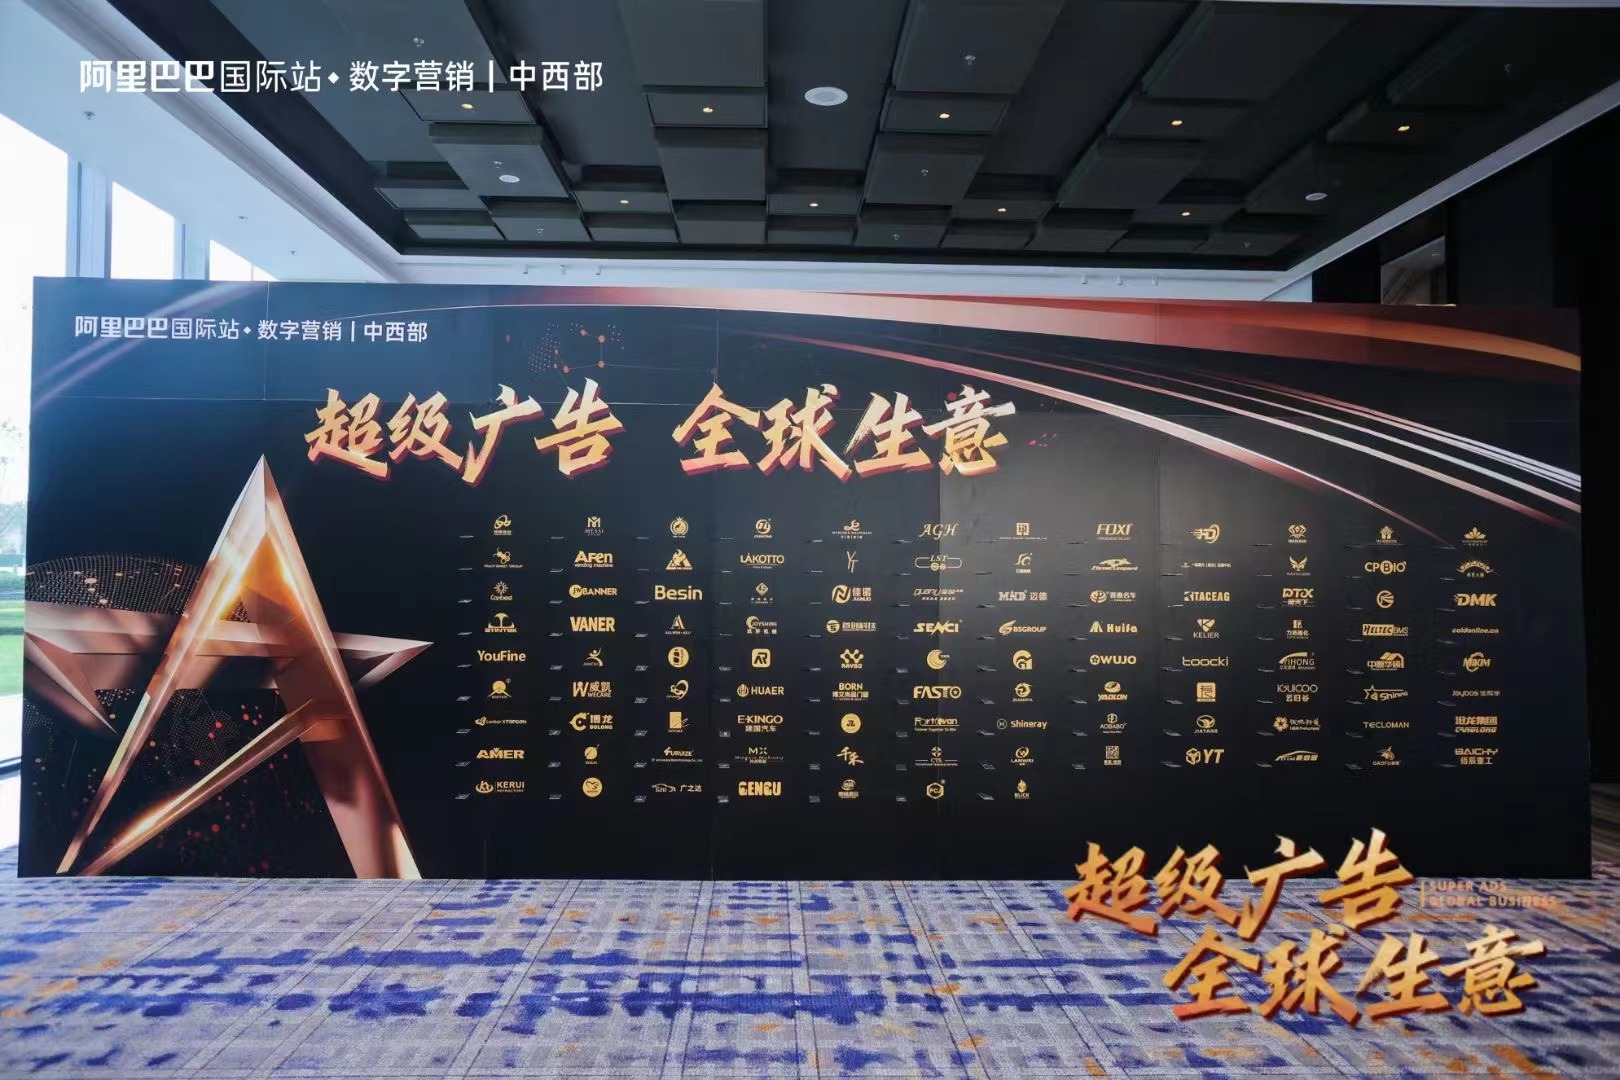 Фасто запрошено взяти участь у транскордонному саміті нових можливостей Alibaba International Station 2023